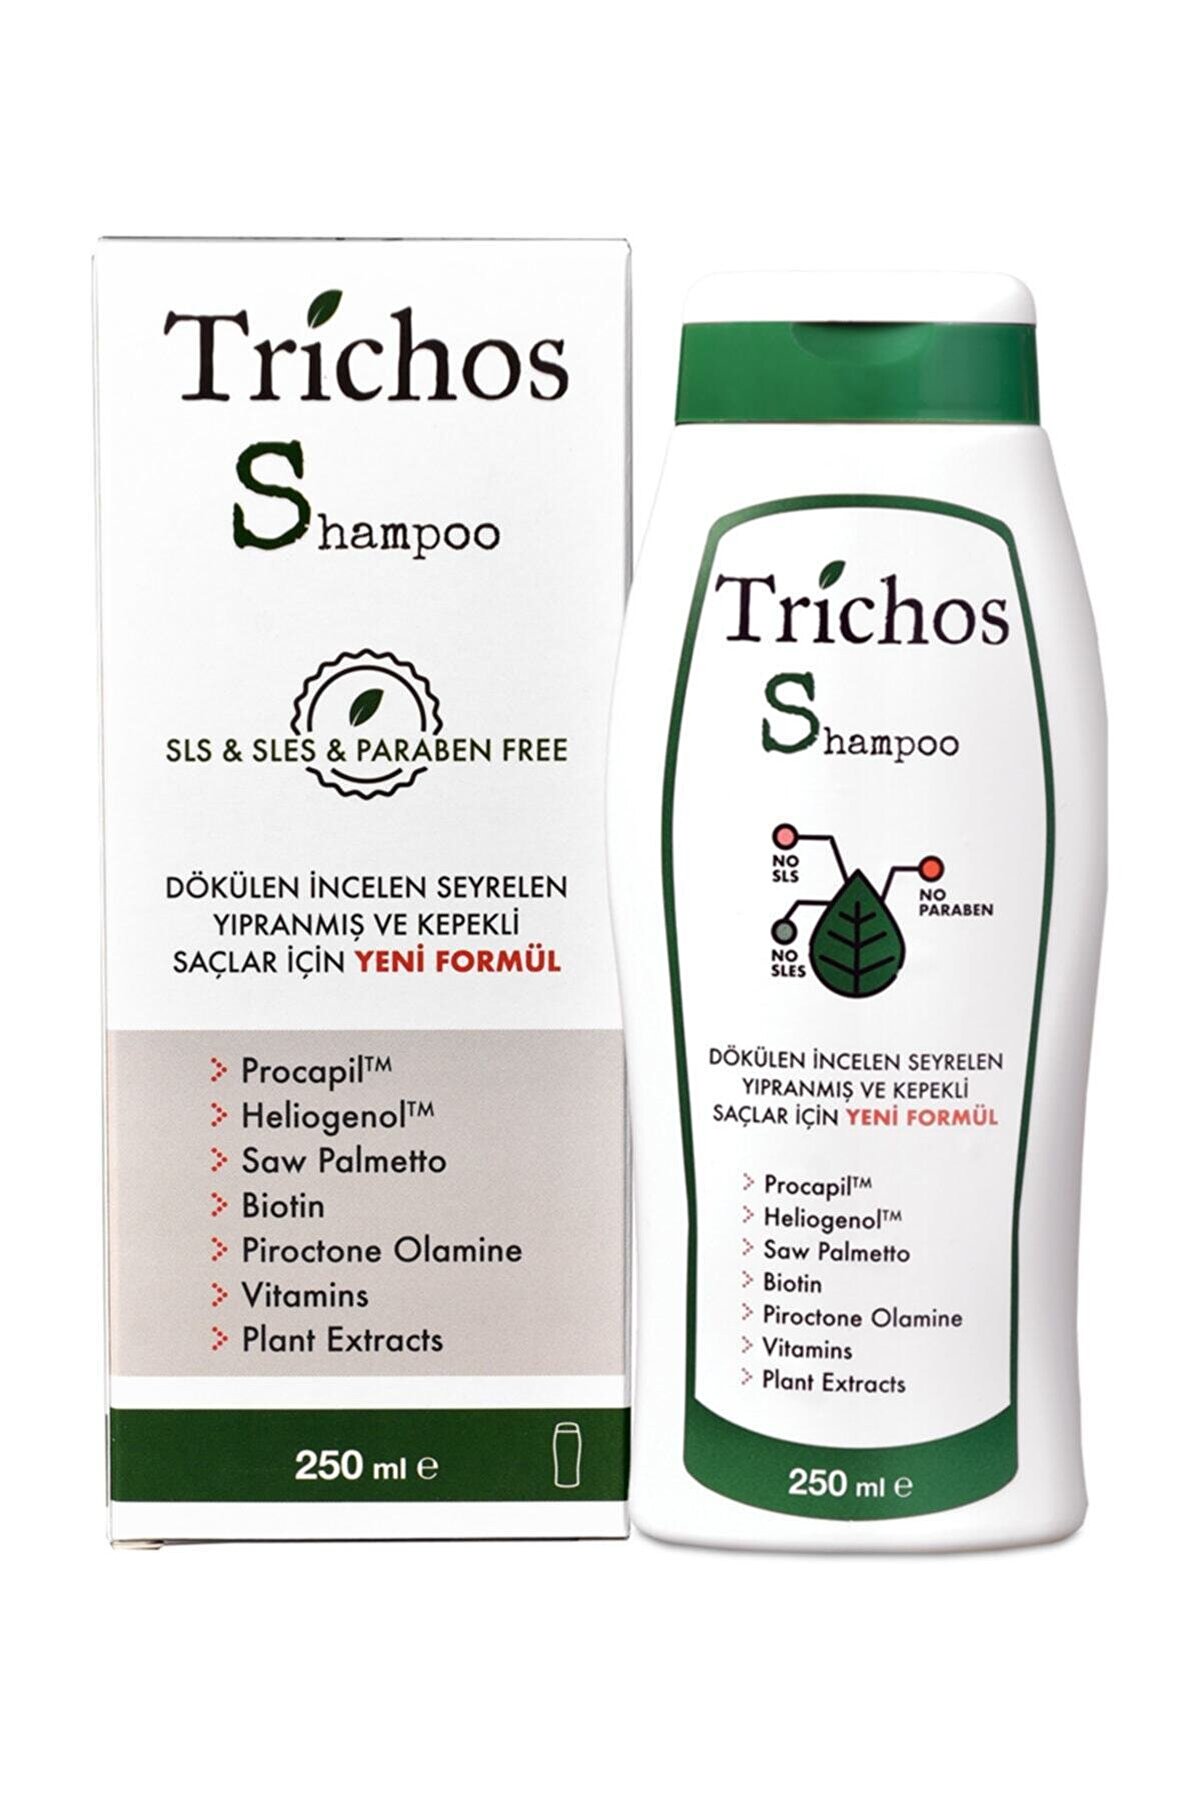 TRİCHOS Shampoo 250 ml Bakım Şampuanı (Saç Dökülmesi Için)